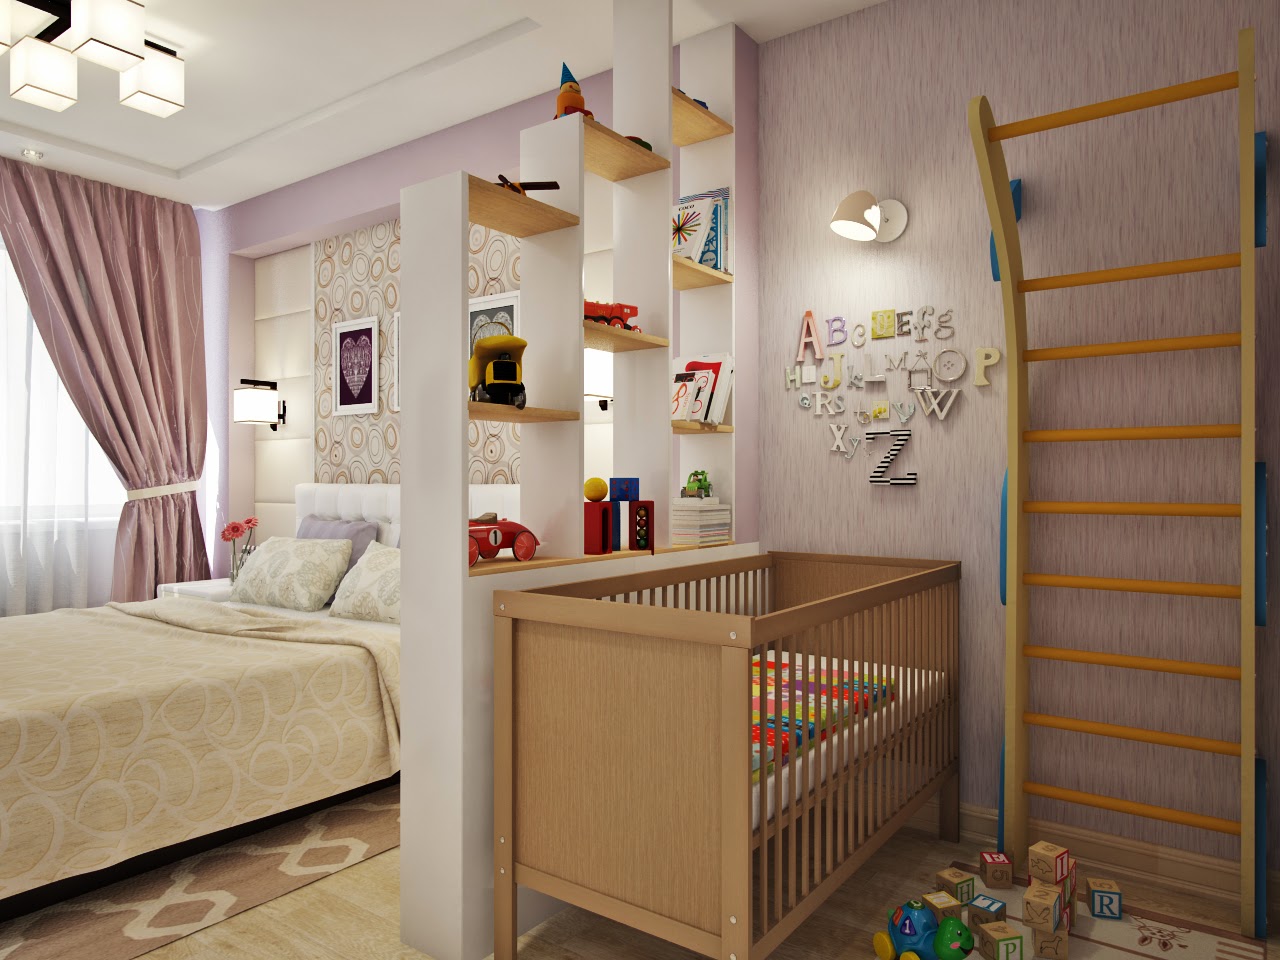 غرفة نوم والأطفال في صورة واحدة ديكور غرفة